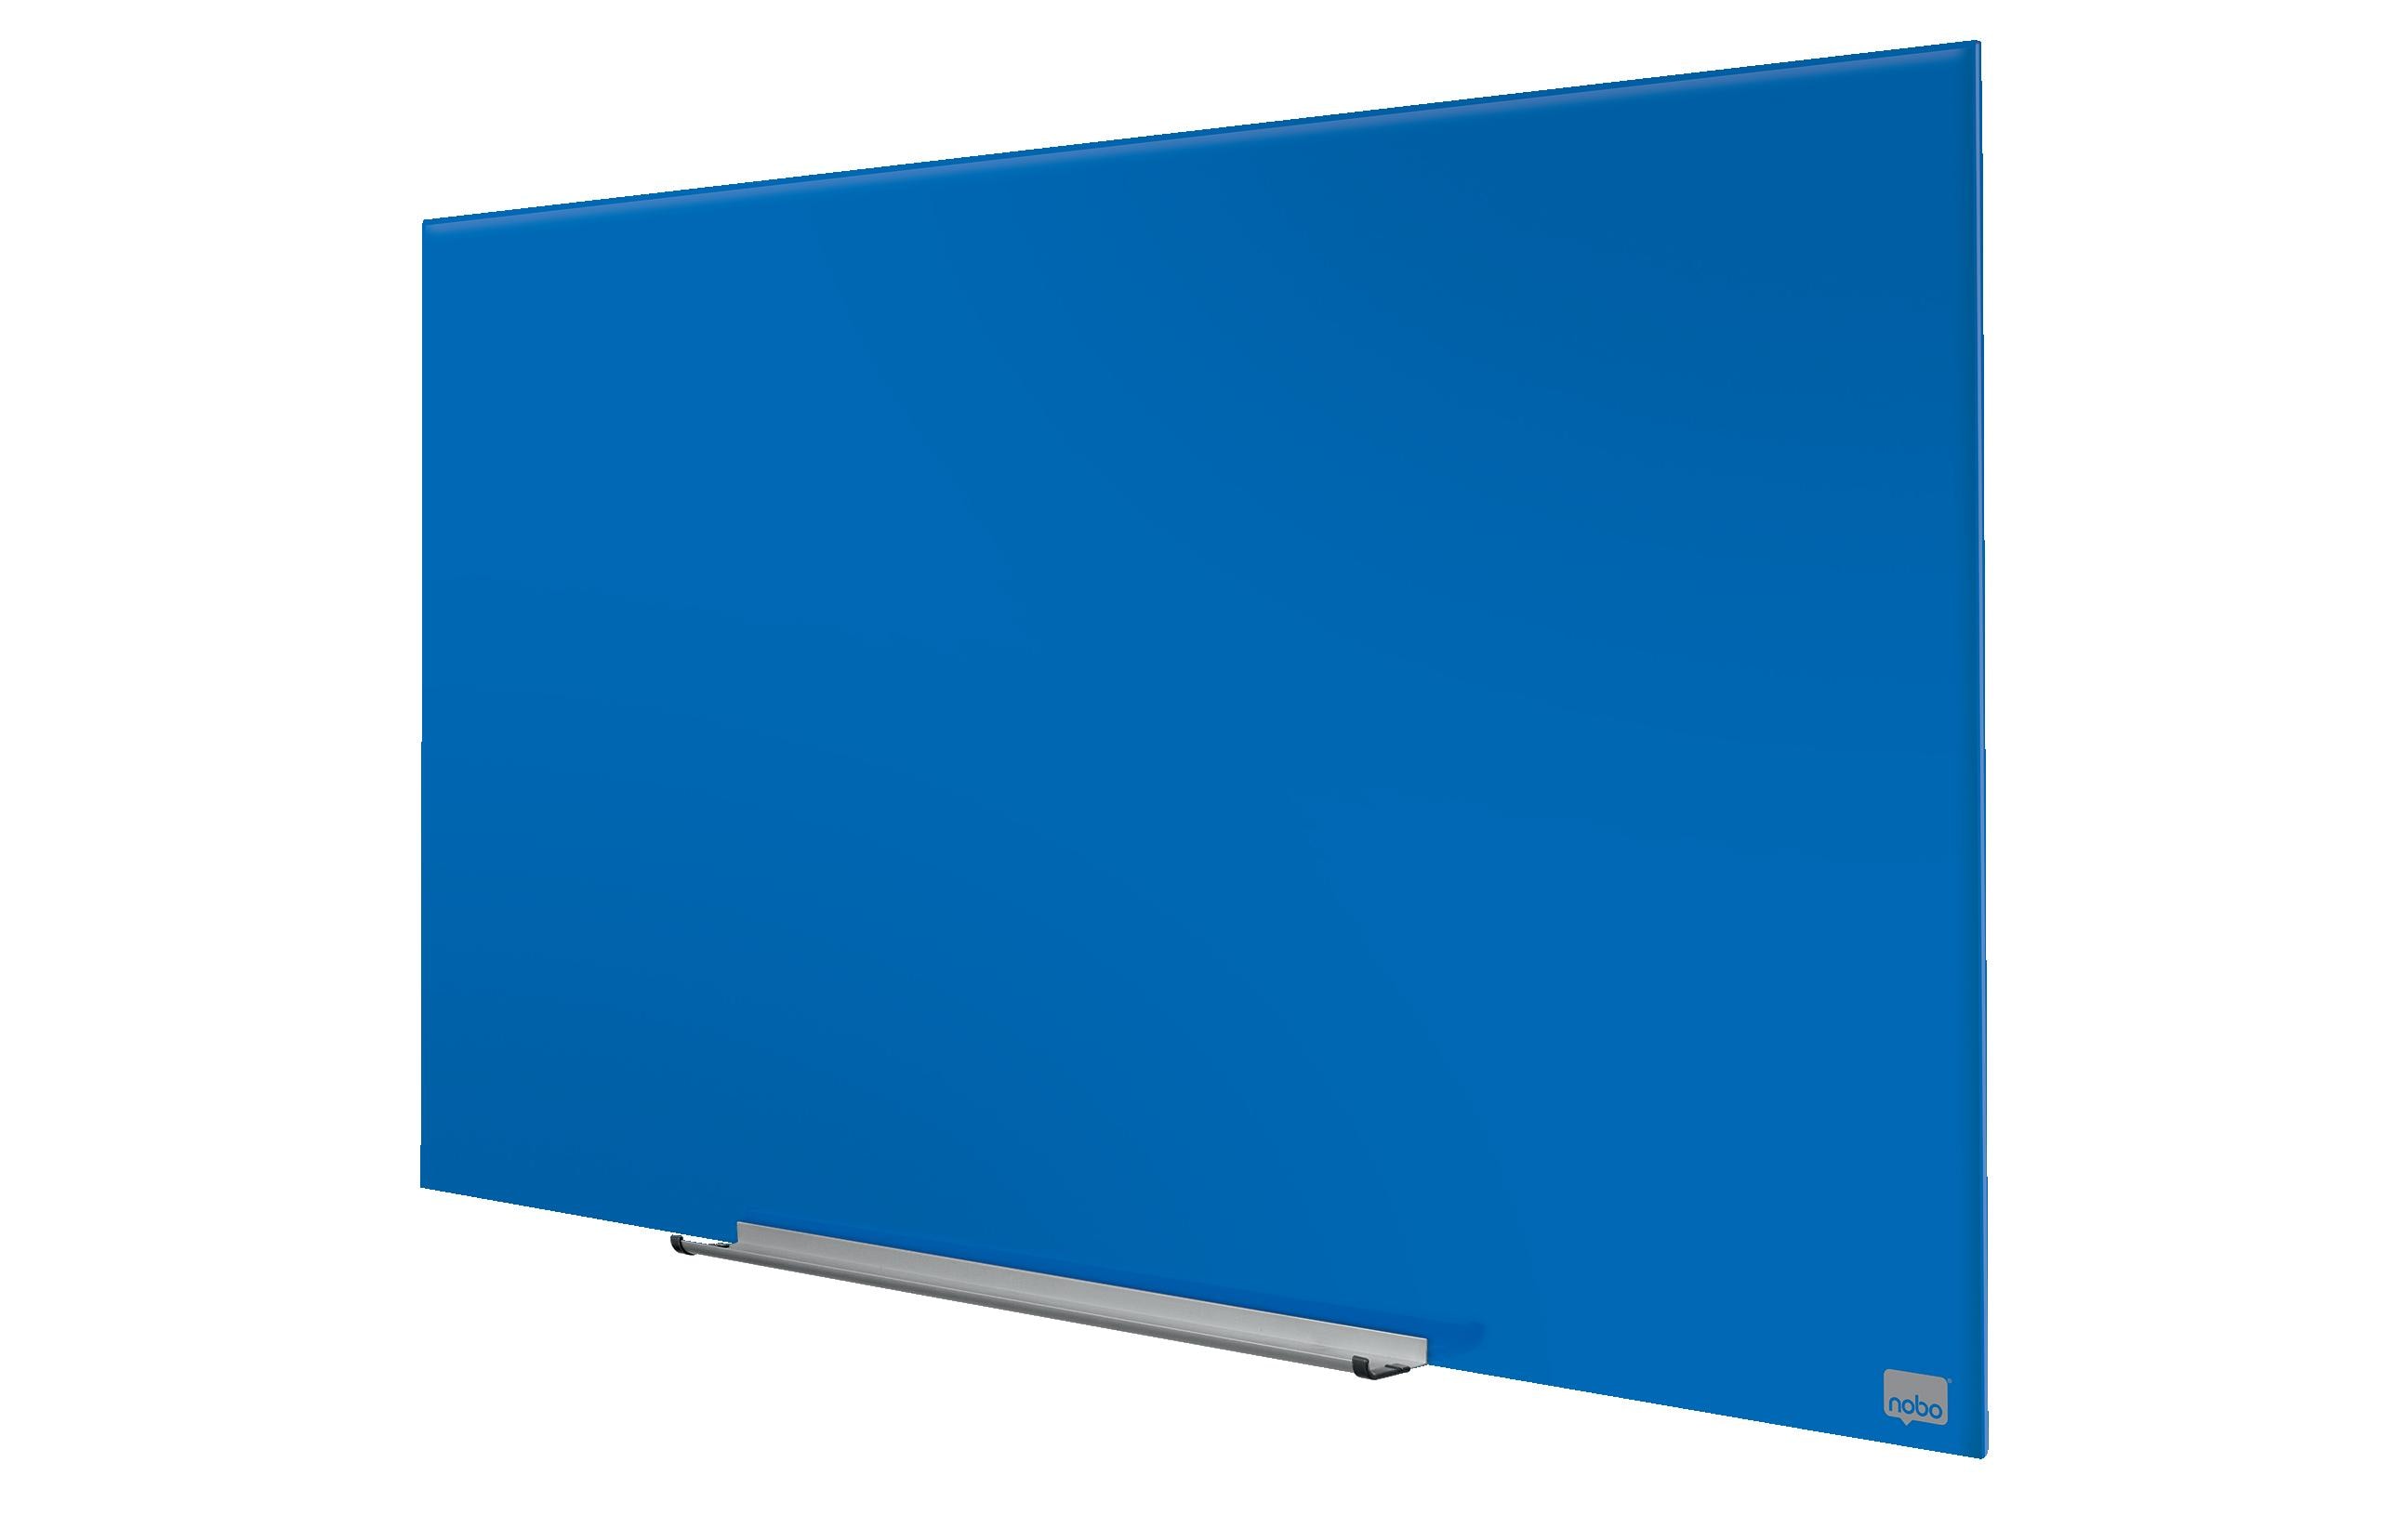 Nobo Magnethaftendes Glassboard Impression Pro 45, Blau